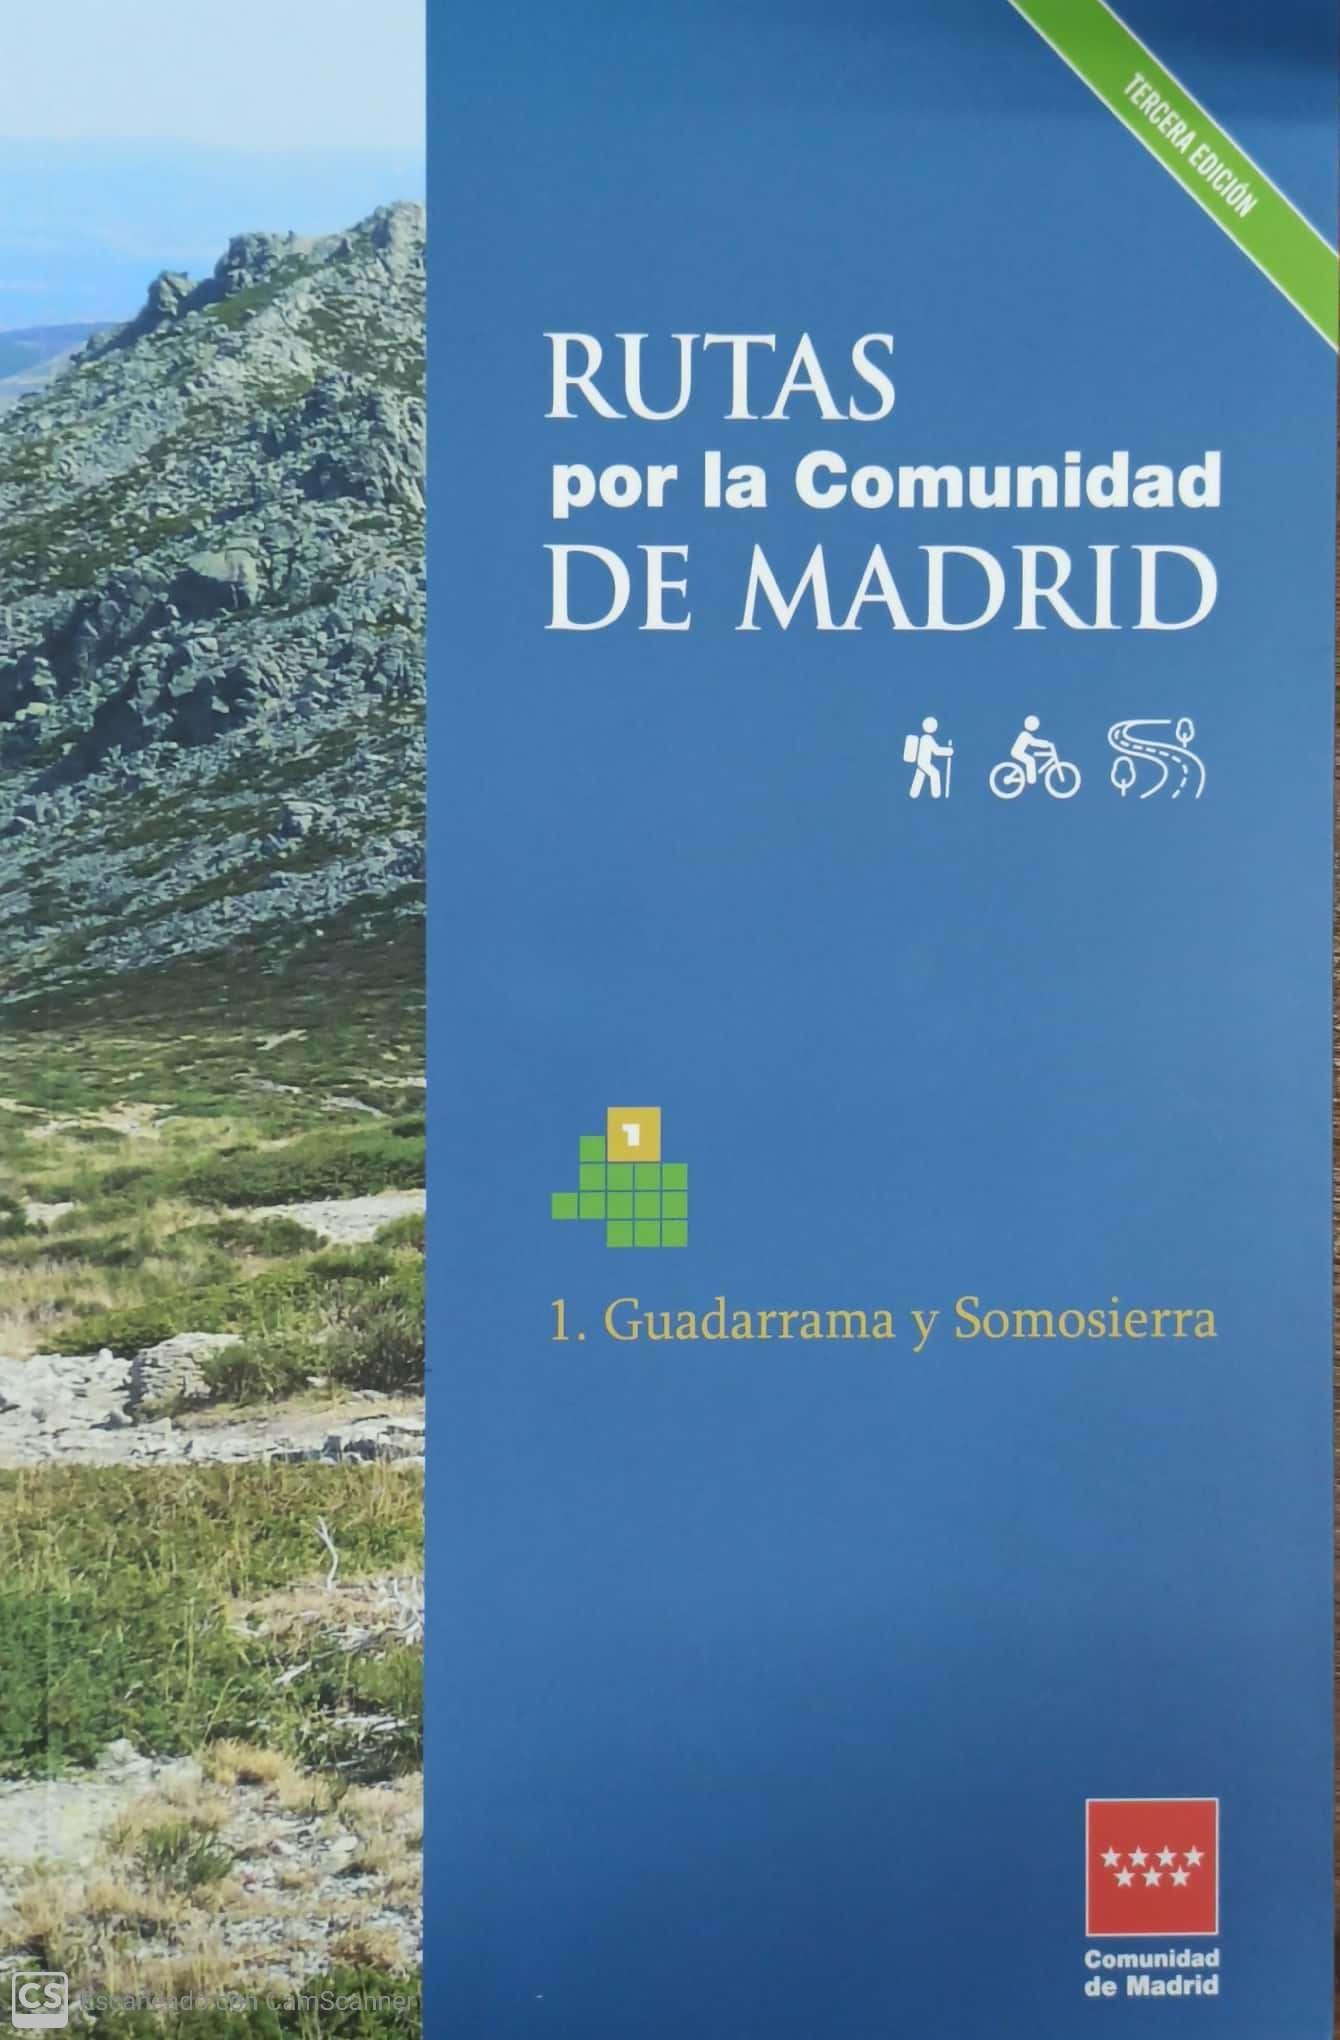 RUTAS POR LA COMUNIDAD DE MADRID "1. GUADARRAMA Y SOMOSIERRA"